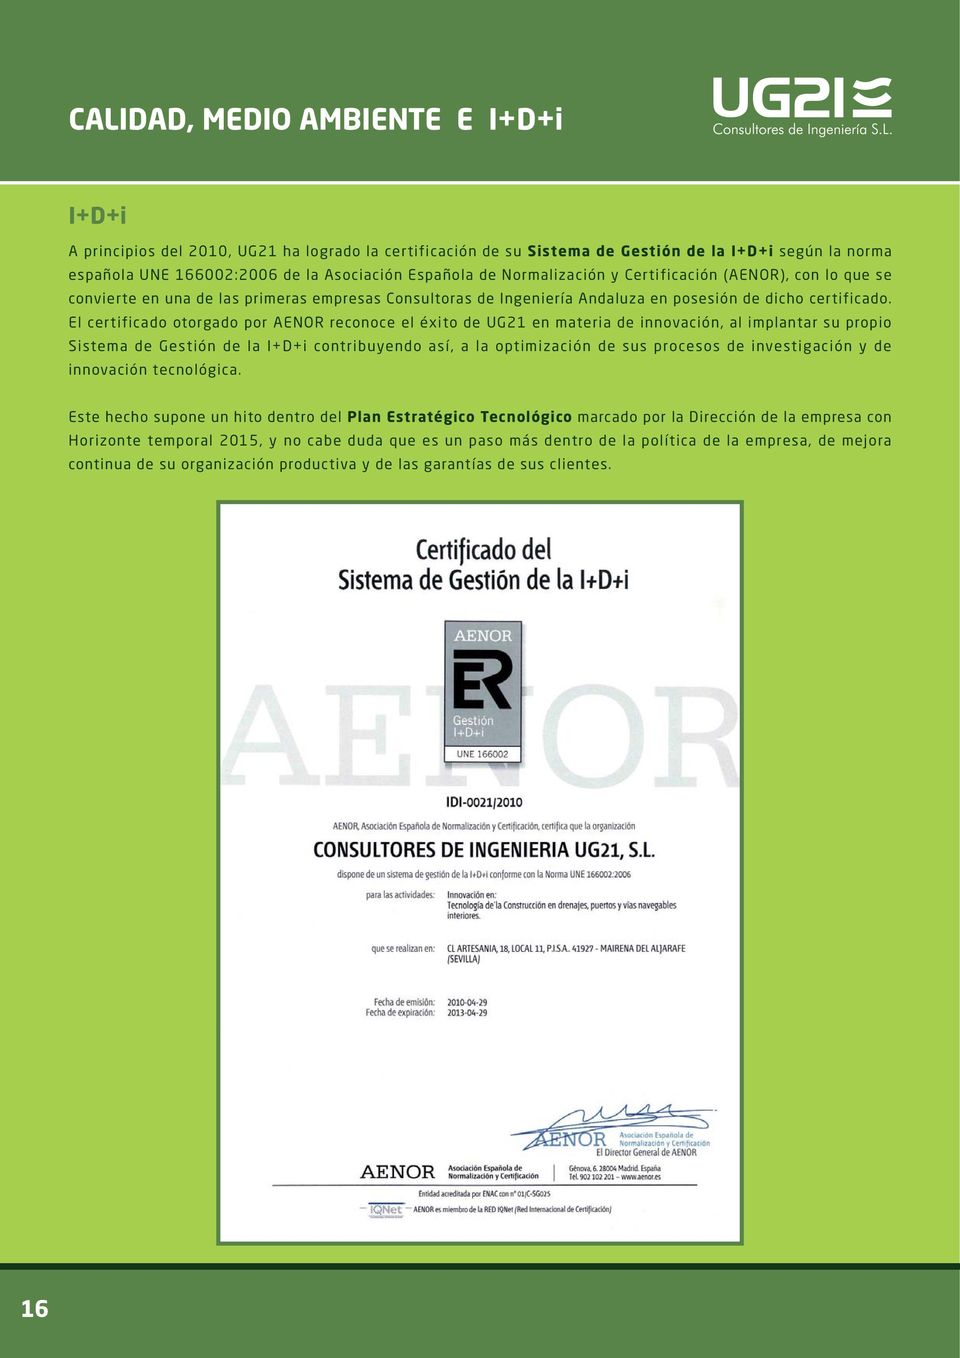 El certificado otorgado por AENOR reconoce el éxito de UG21 en materia de innovación, al implantar su propio Sistema de Gestión de la I+D+i contribuyendo así, a la optimización de sus procesos de